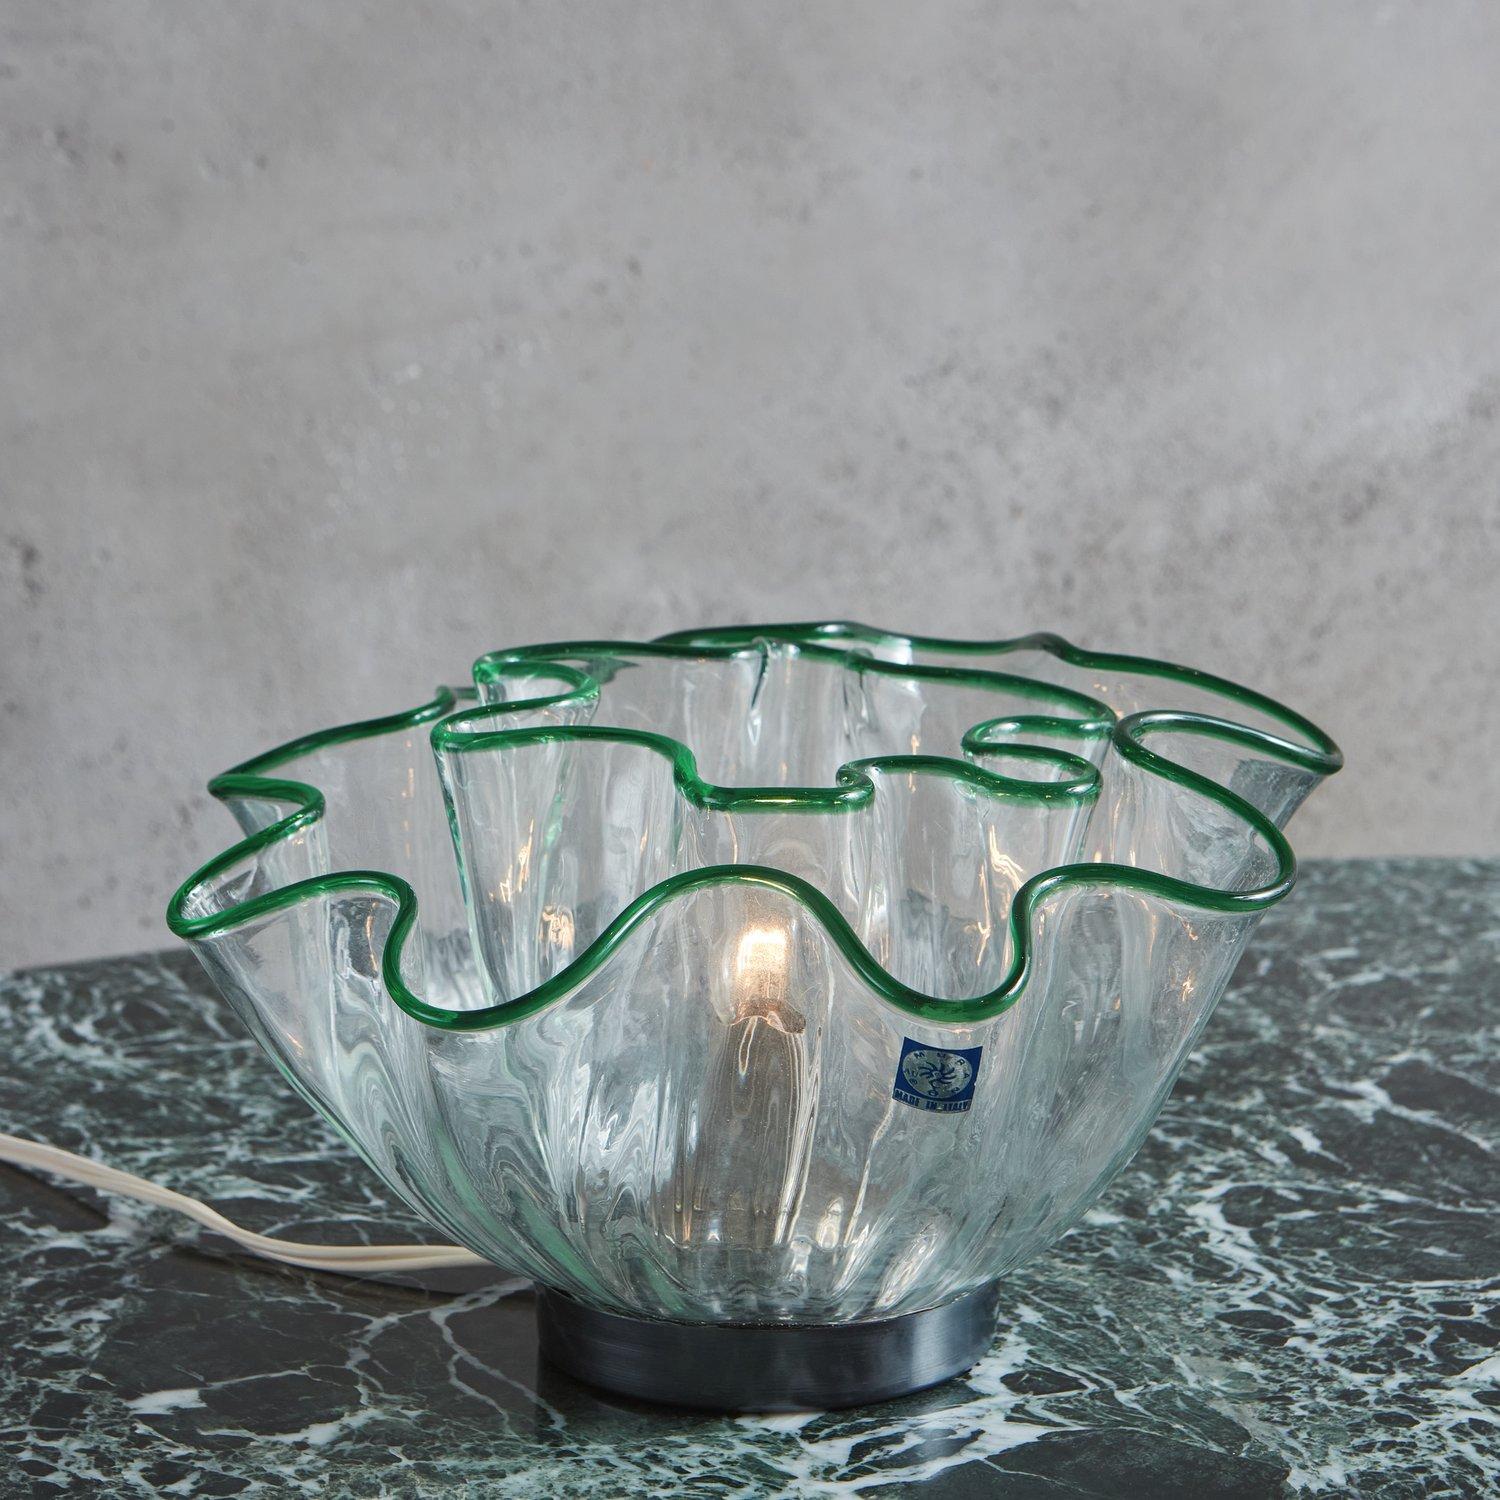 Une collection de lampes italiennes Galea conçues par Adalberto Dal Lago pour Vistosi en 1968. Ces lampes en verre de Murano soufflé à la main présentent des abat-jours fazzoletto emboîtables avec une bordure verte. Lorsqu'elles sont allumées, elles